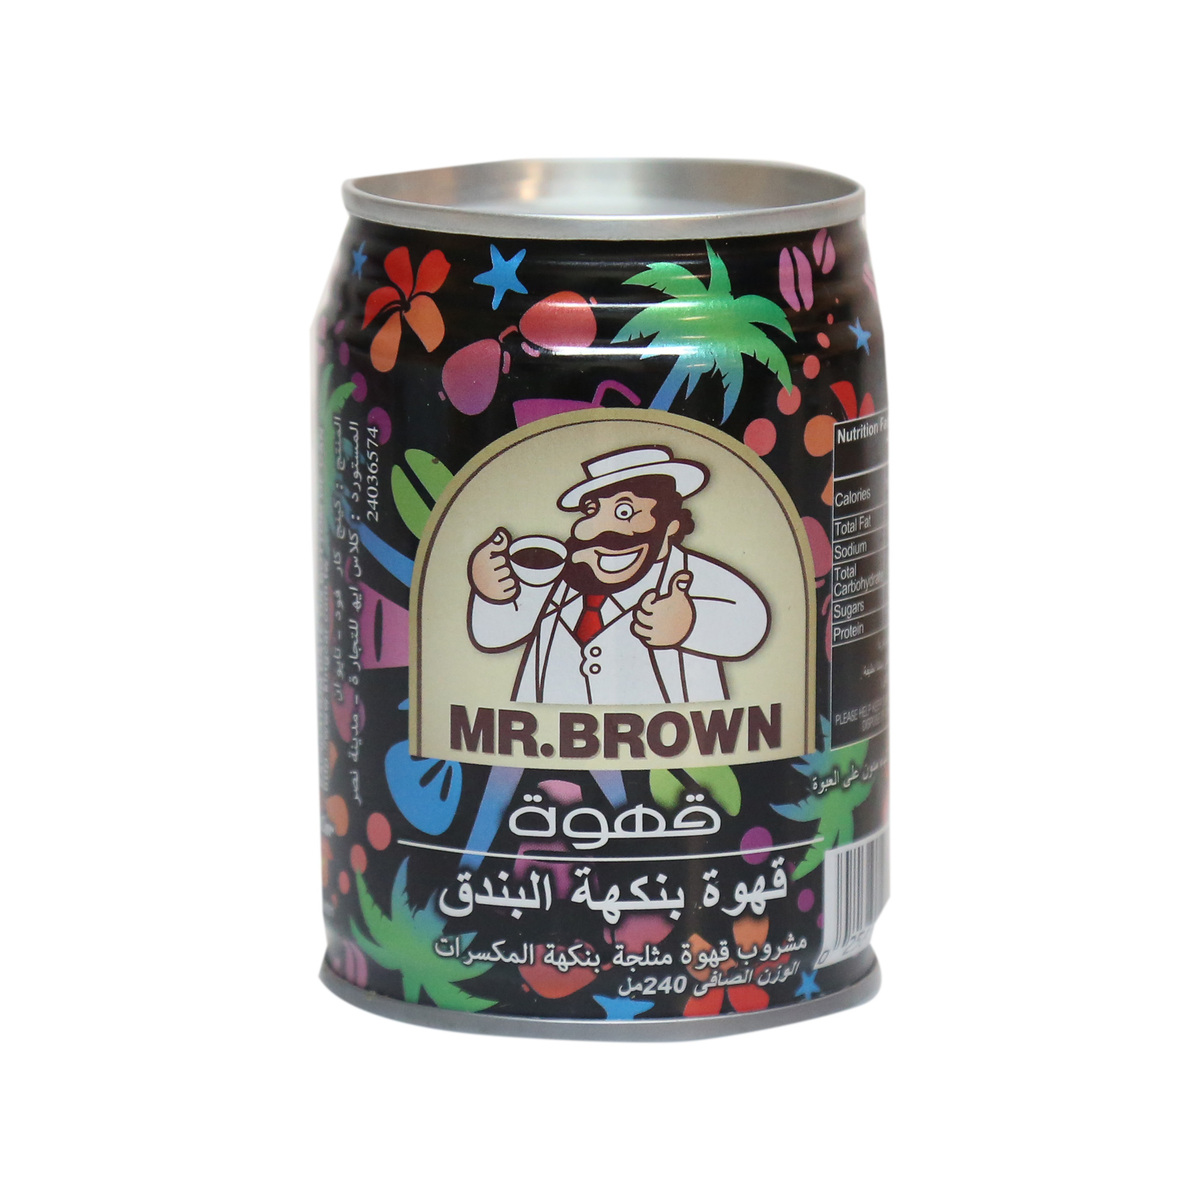 Mr Brown Macadamia Nut Iced Coffee 240ml